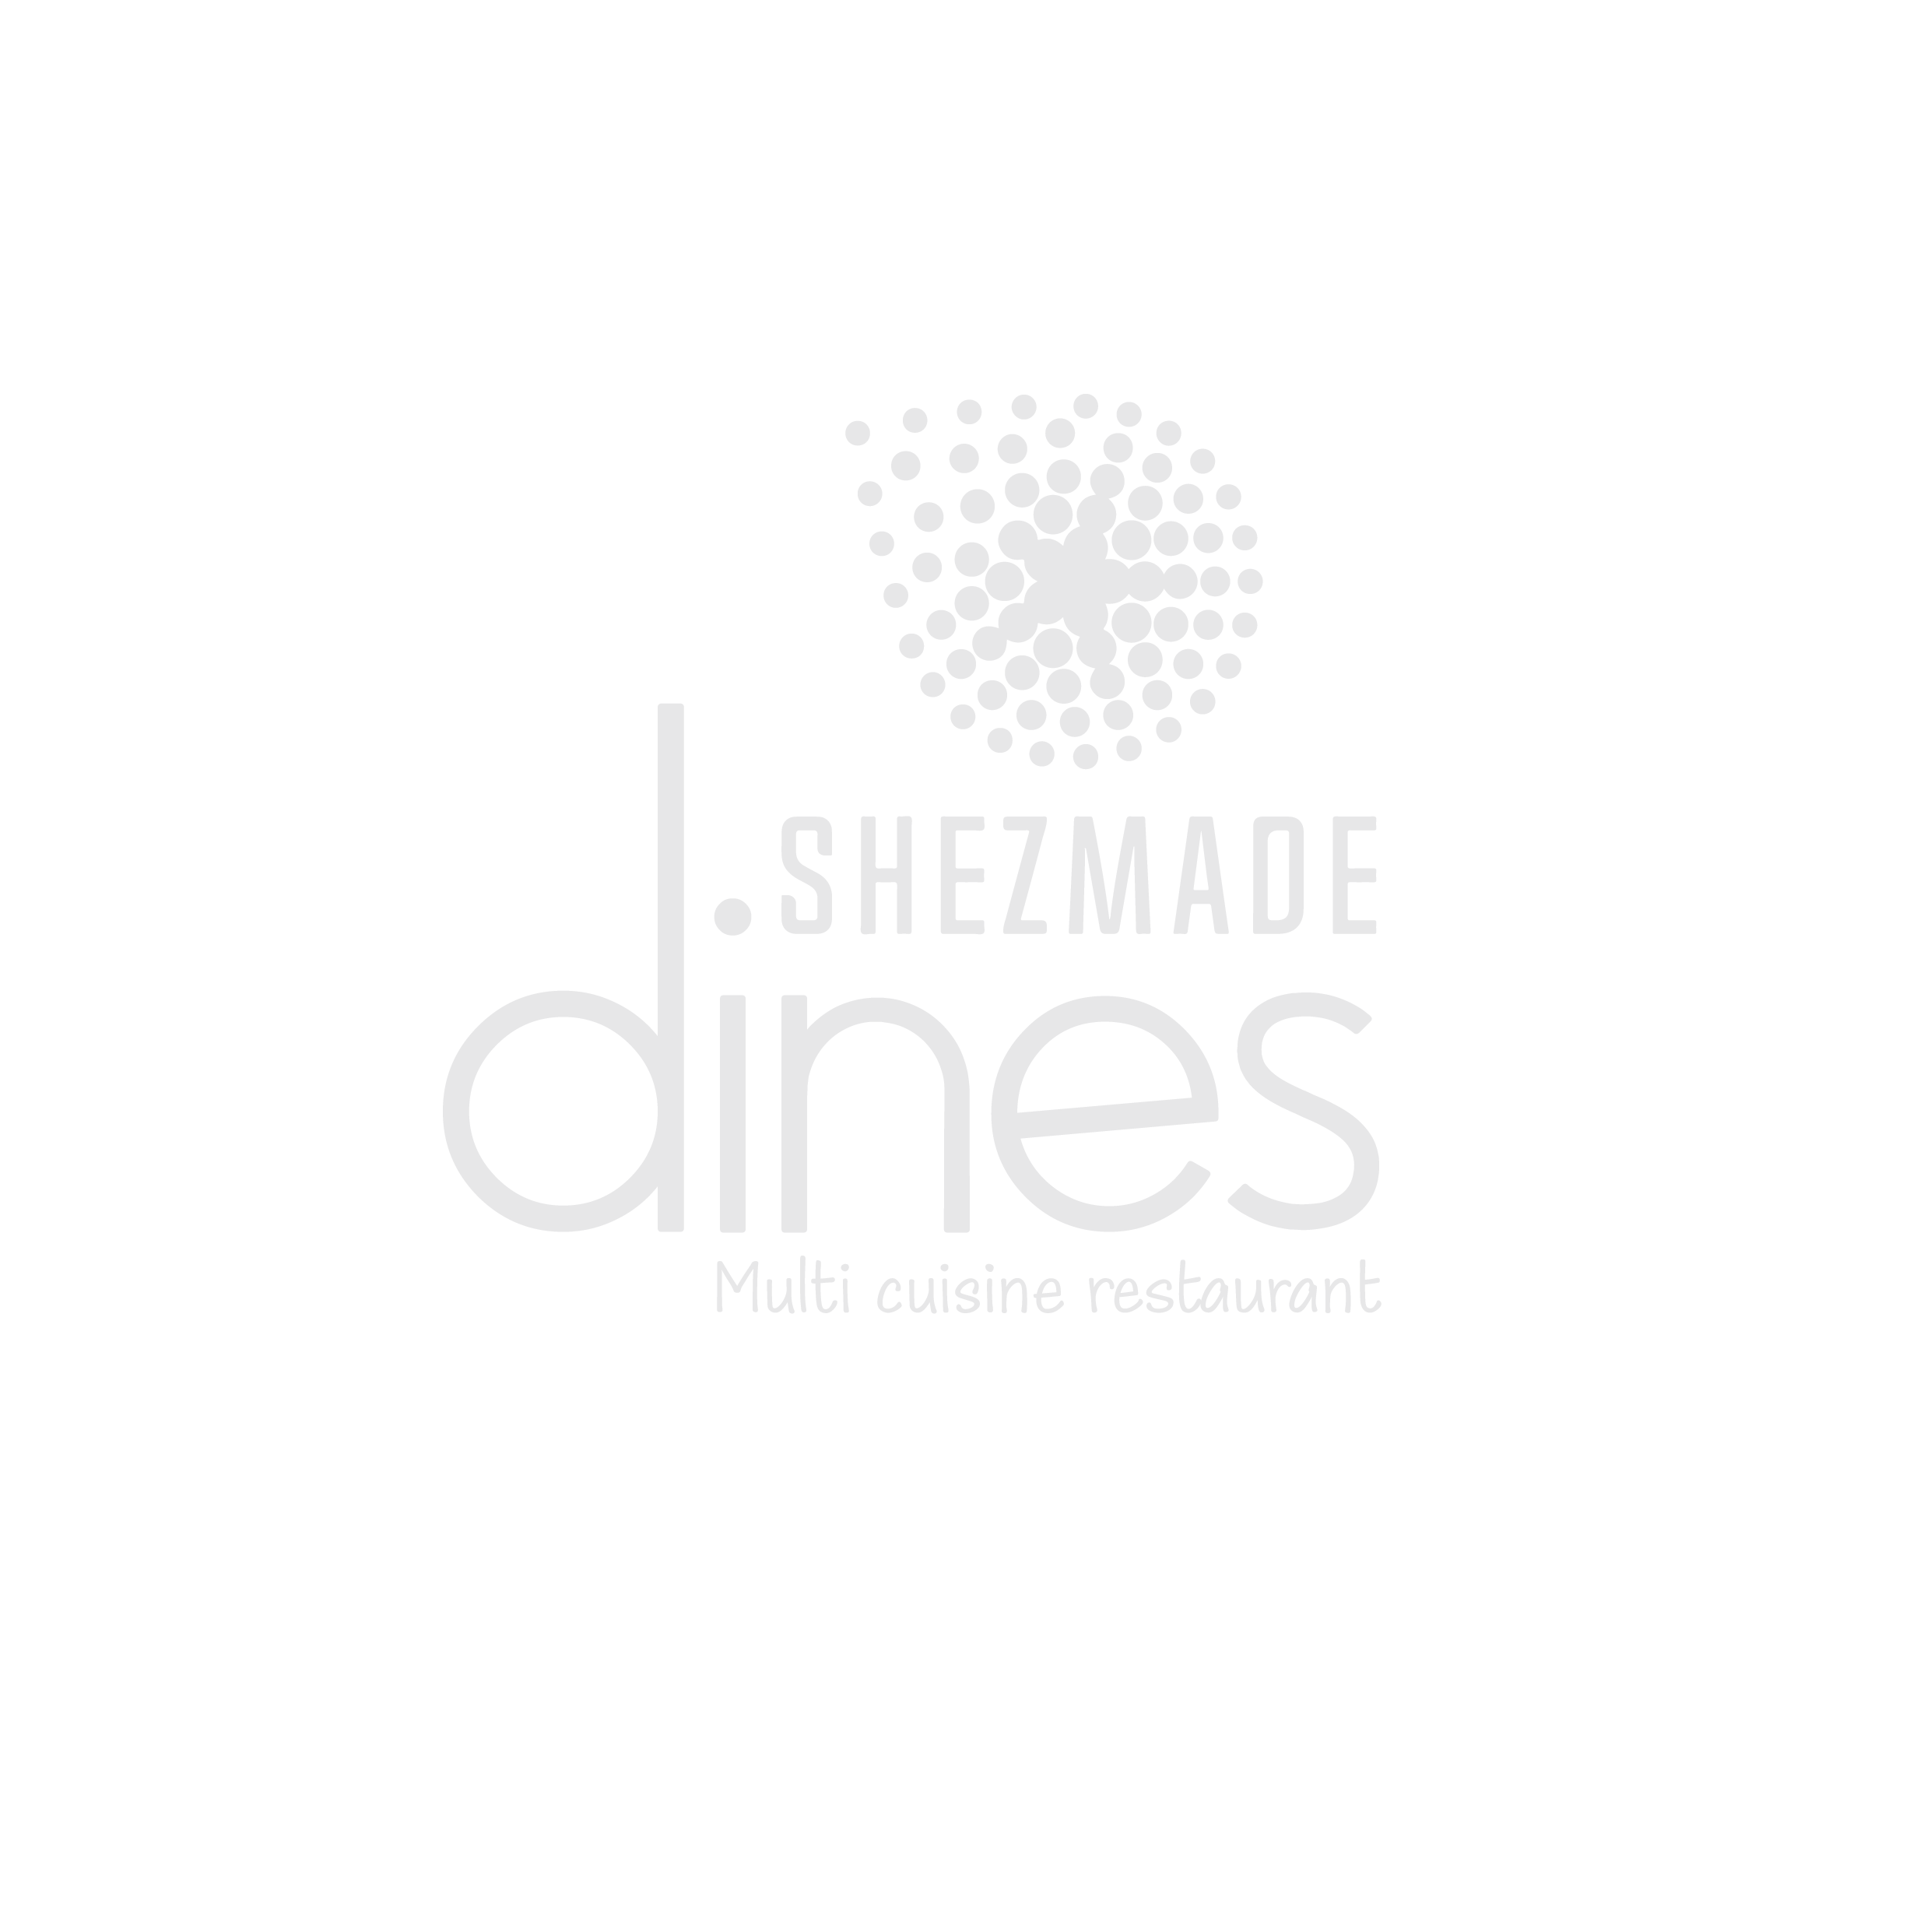 shezmade dines logo (1)-02